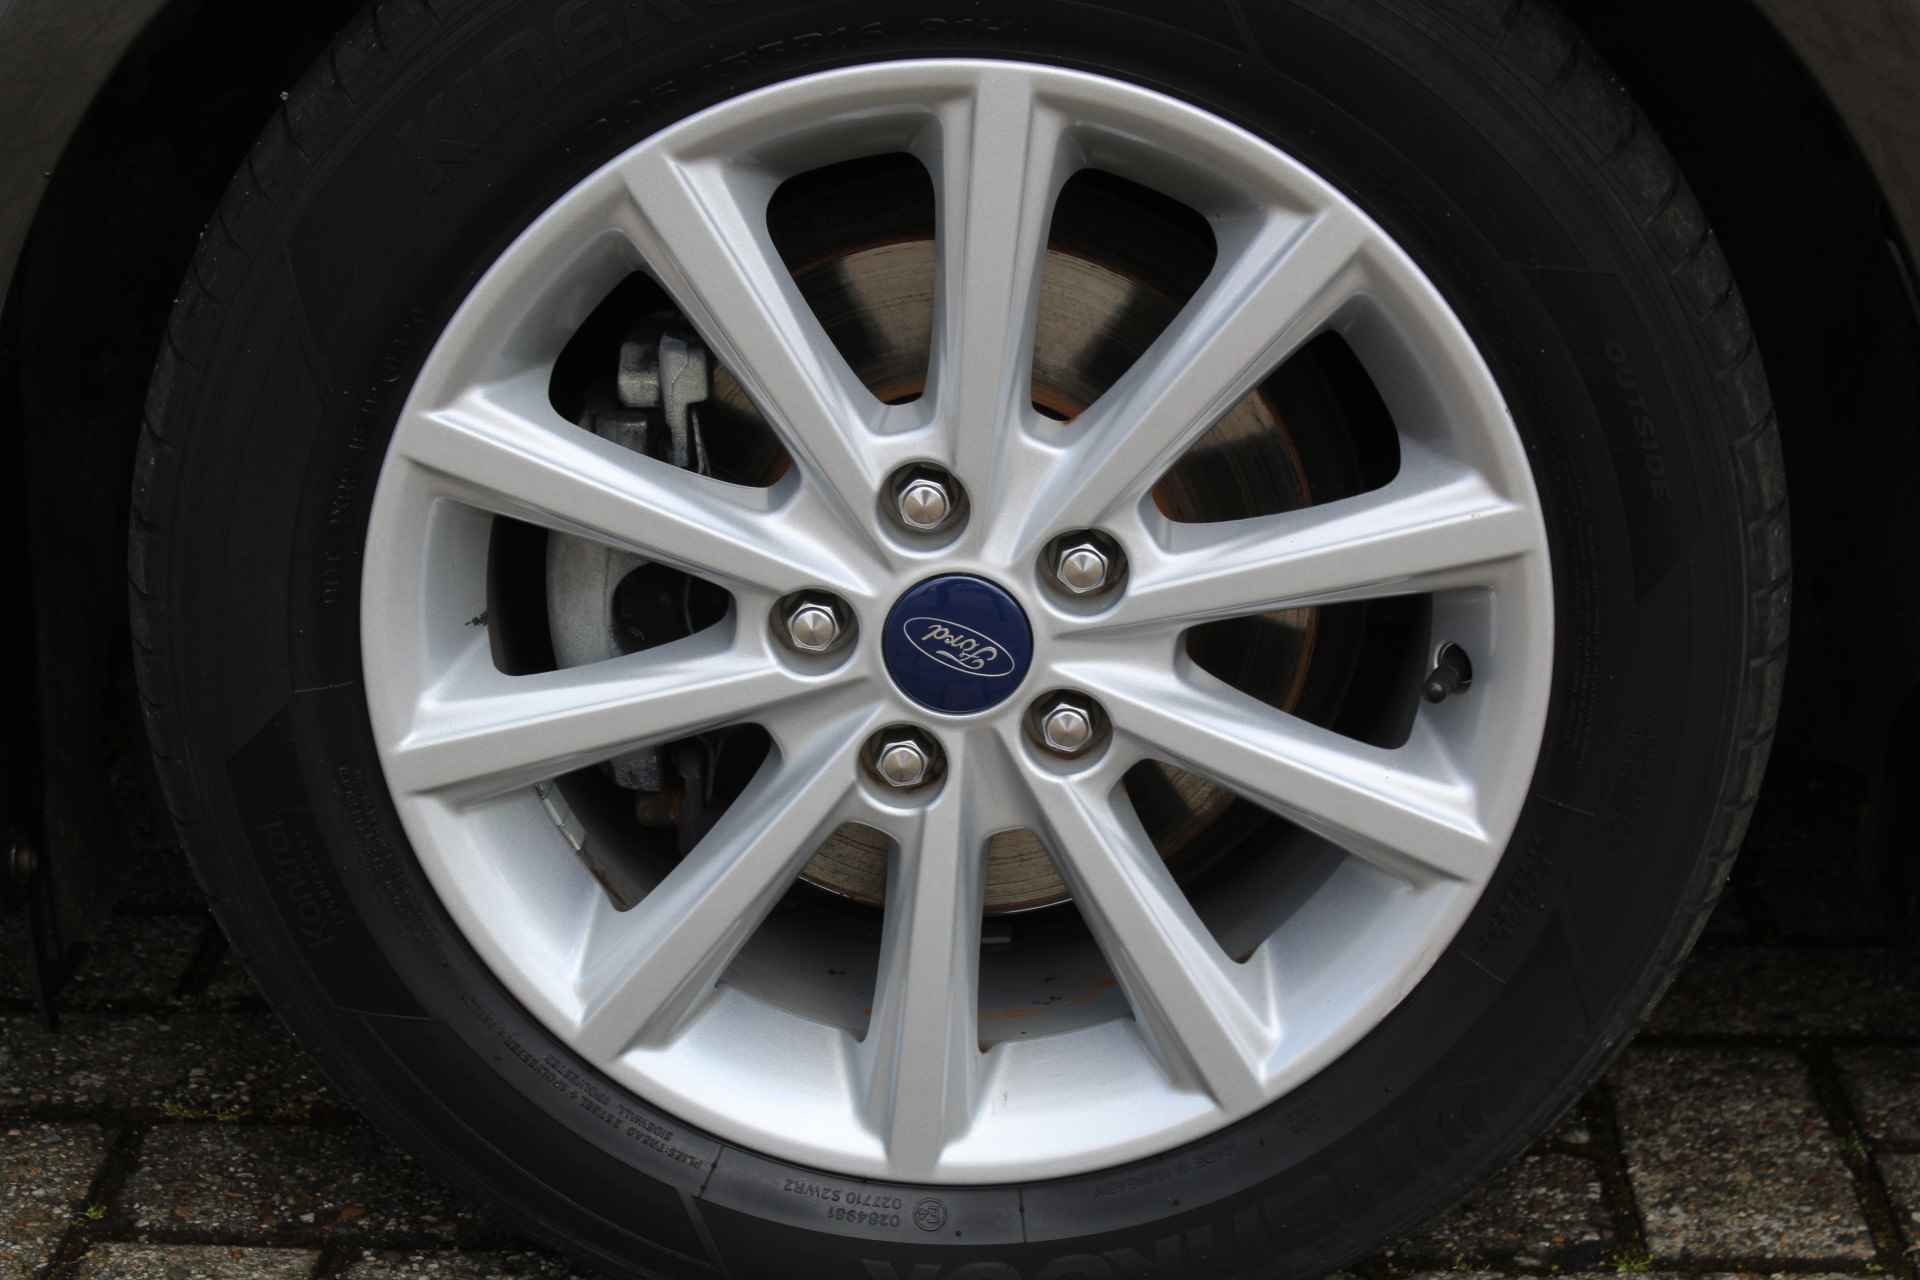 Ford Focus 1.0-125pk Titanium. Fijn rijdende en goed onderhouden Ford Focus hatchback. Volautm. airco dual, cruise control, multifunctioneel stuurwiel, boordcomputer, navigatie, telefoonvoorb., metallic lak, LM wielen, elektr. ramen en spiegels etc. - 35/38